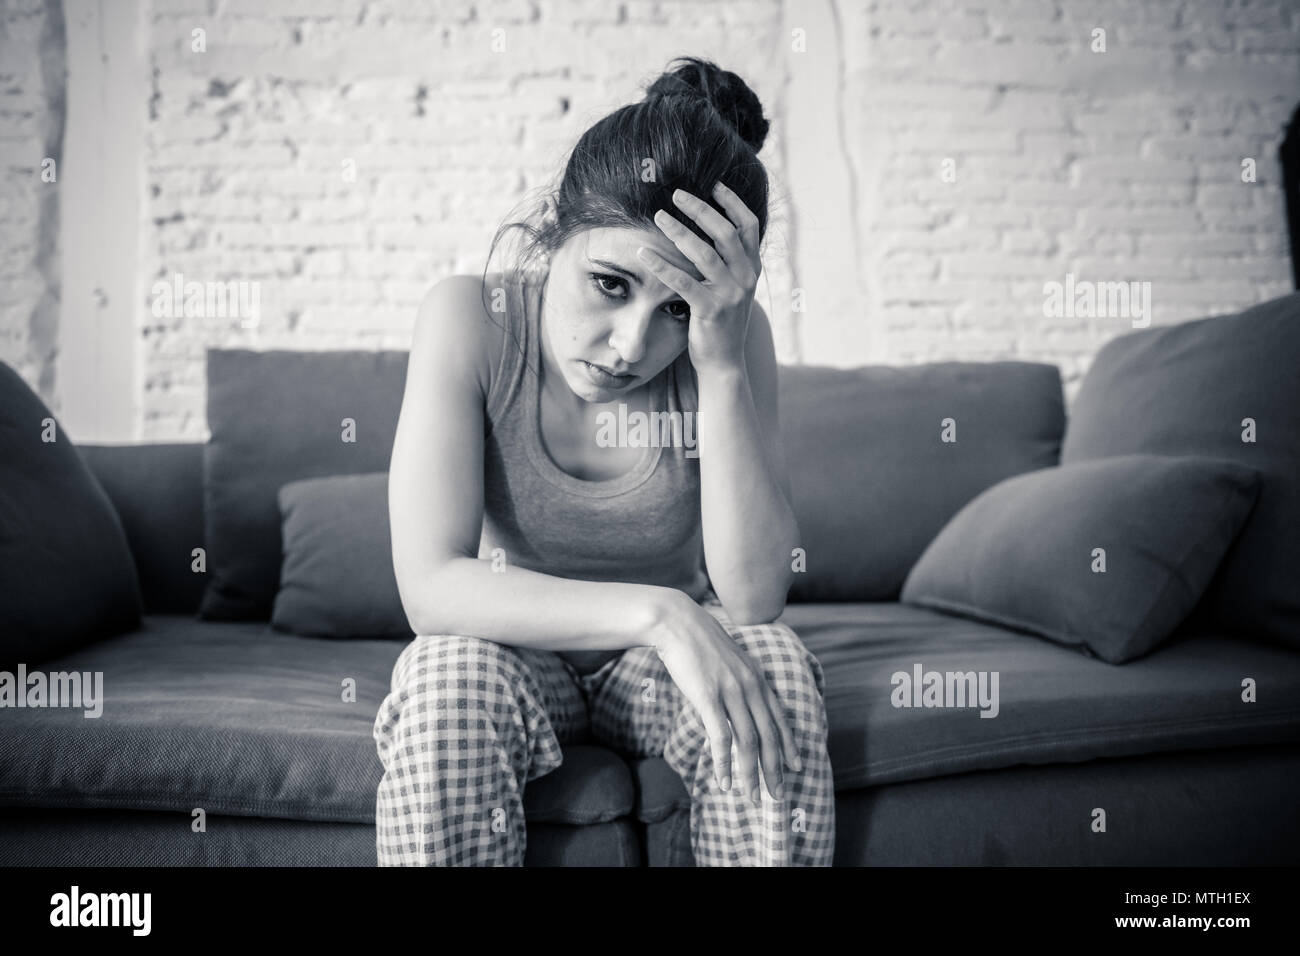 Schönen lateinischen gedrückt einsame Frau starrte traurig, Schmerzen, Trauer zu Hause auf Ihrem Sofa. Krise, Depression und psychische Gesundheit Konzept Stockfoto